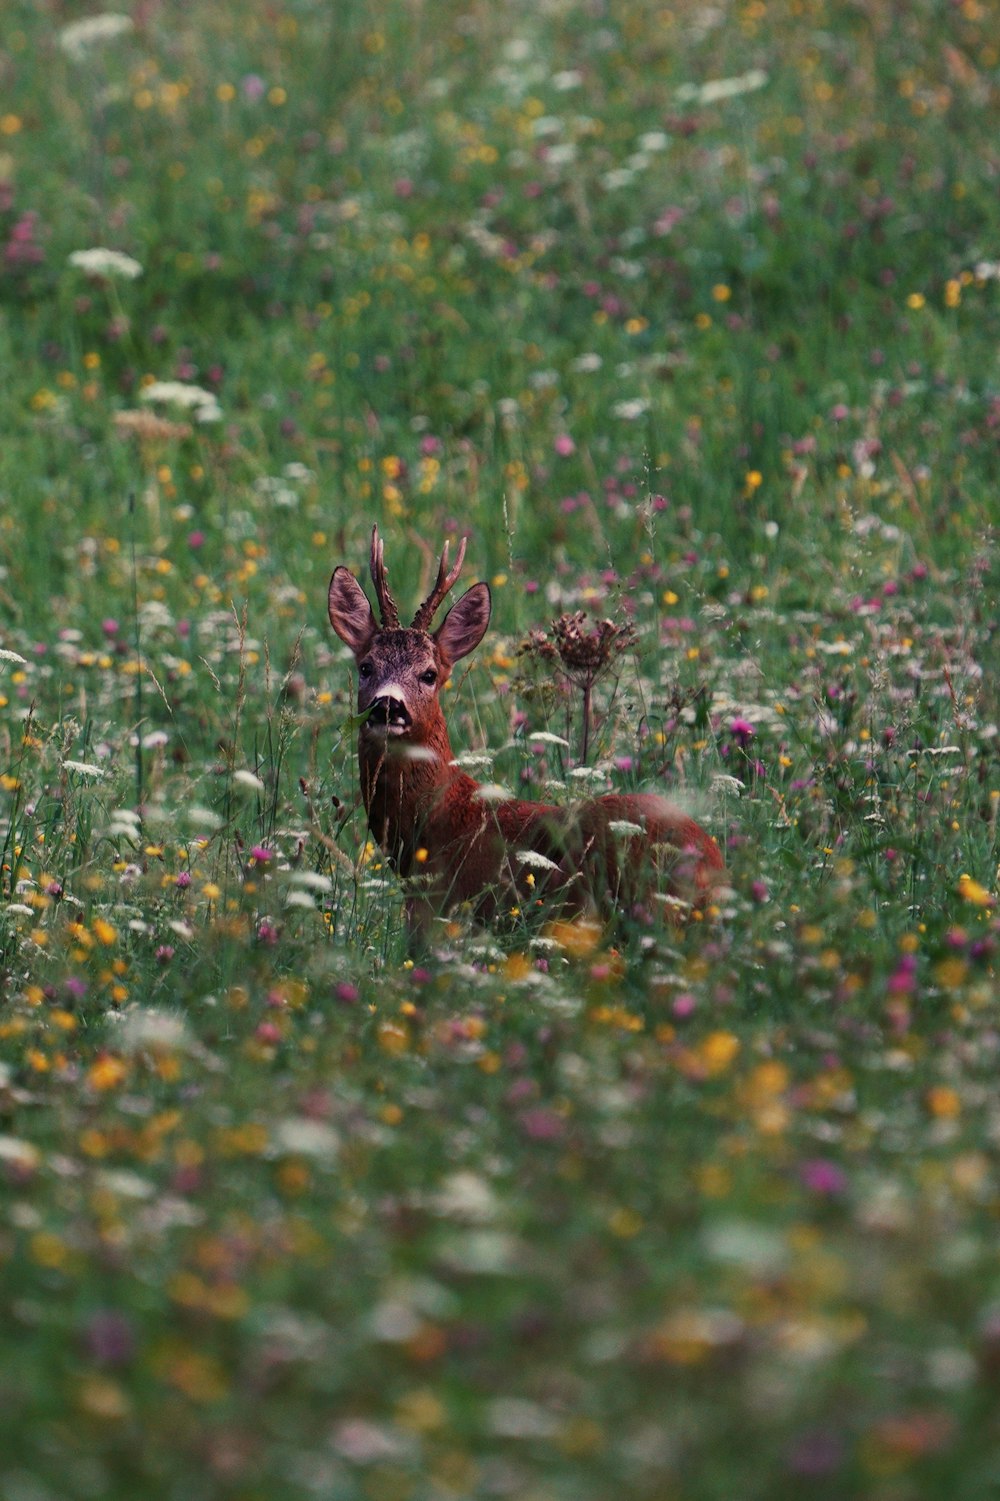 昼間の緑の芝生の茶色の鹿